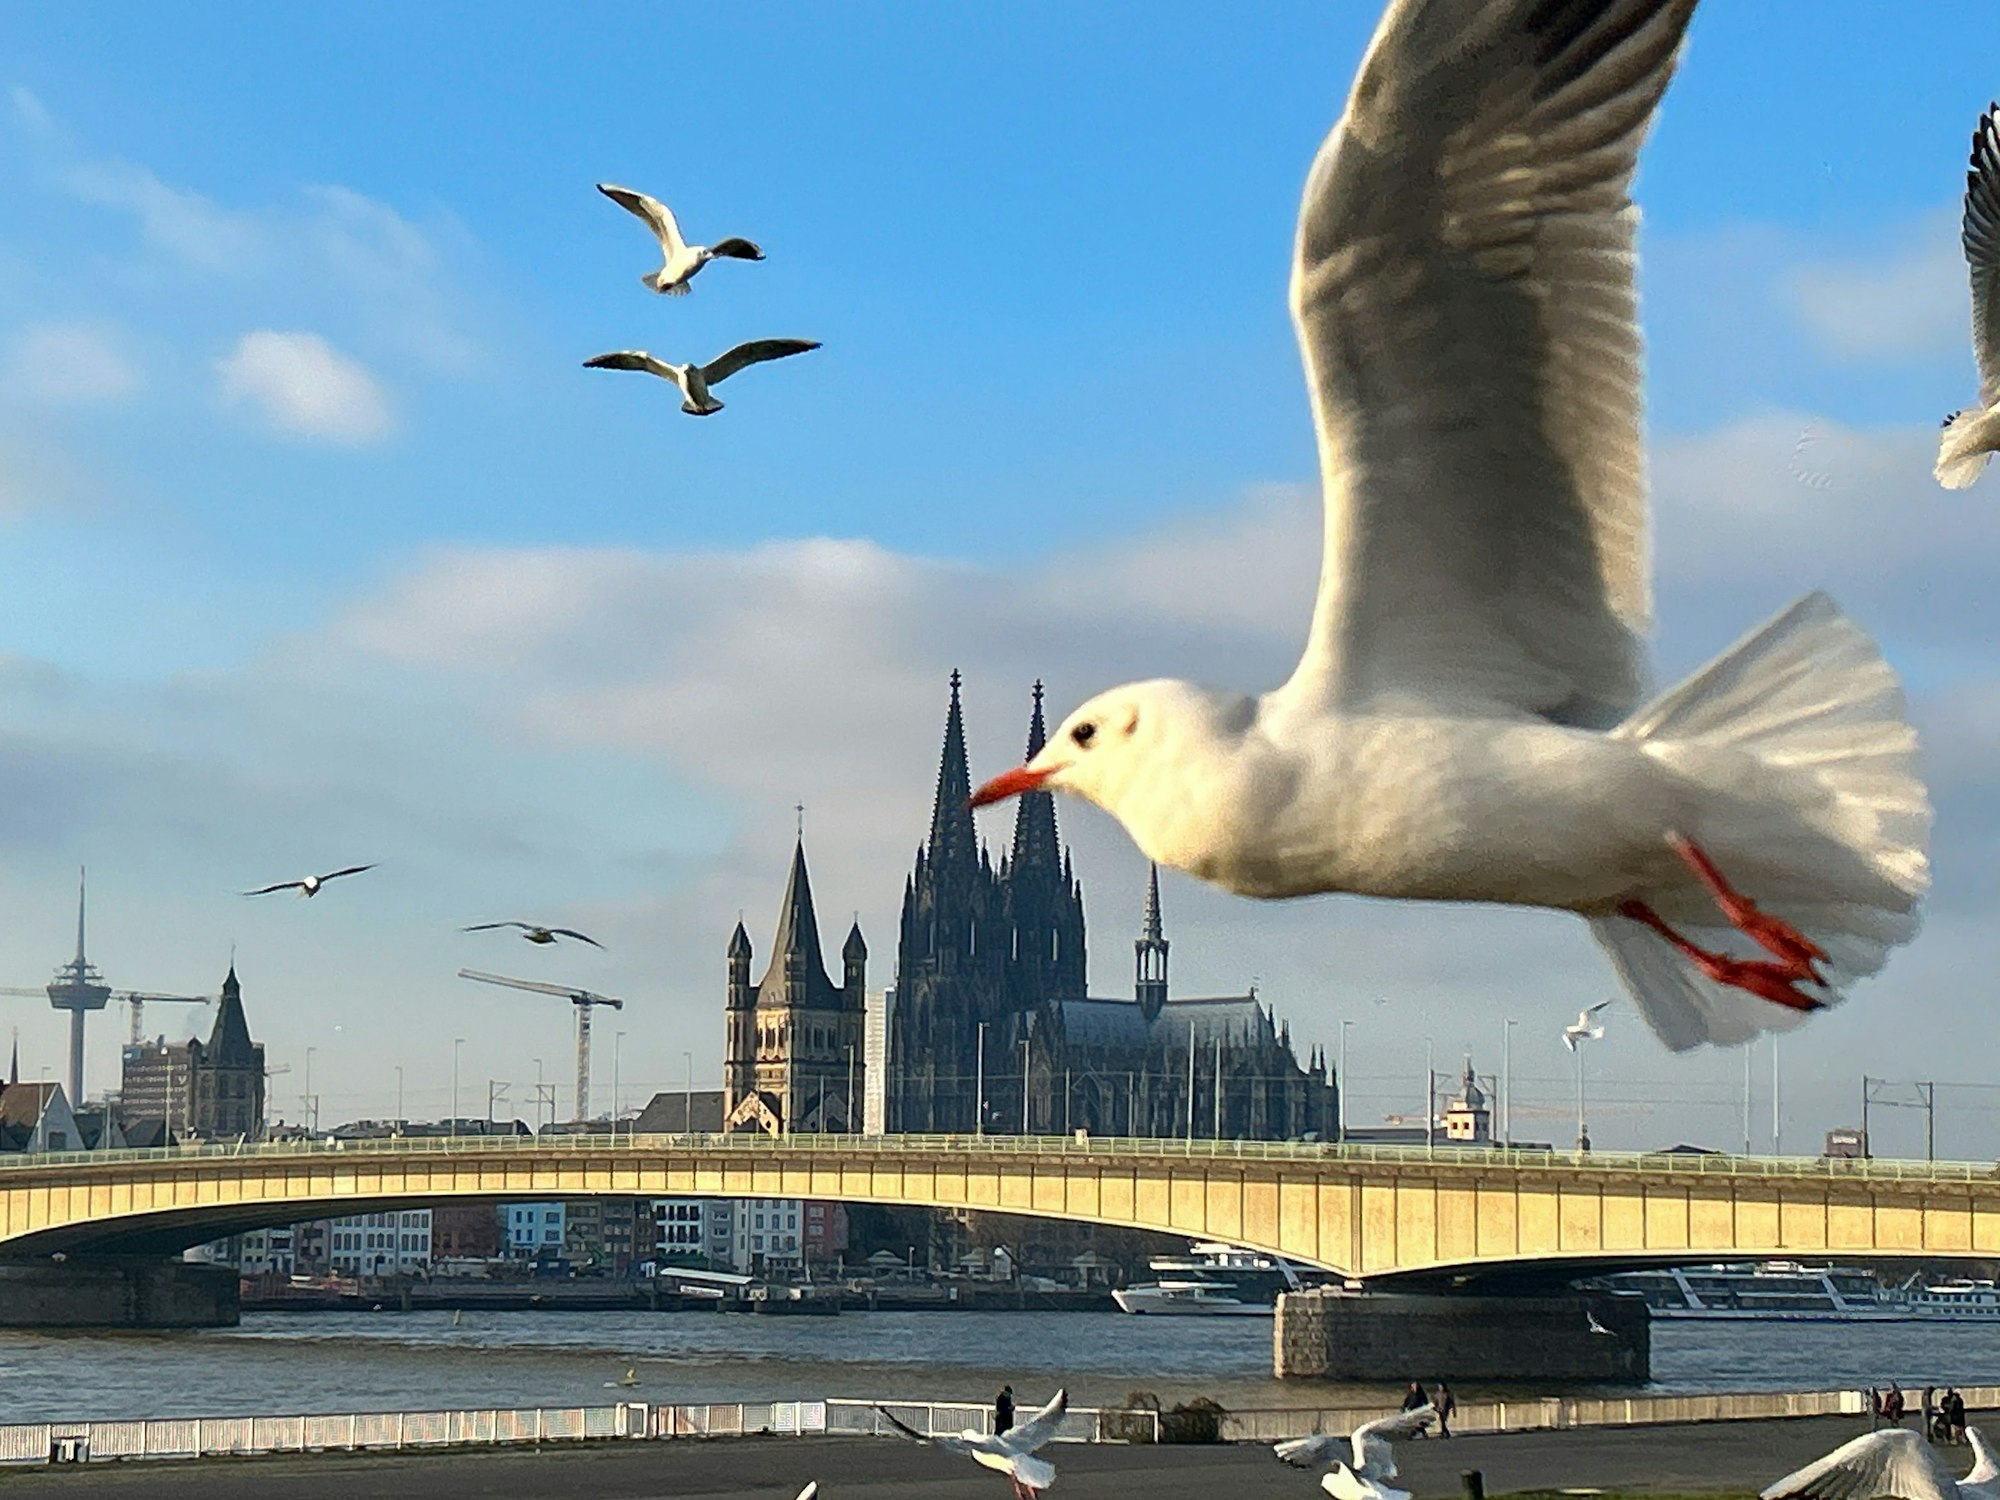 Das Kölner Stadtpanorama mit Rhein und Dom. Im Vordergrund fliegt eine Möwe durchs Bild.